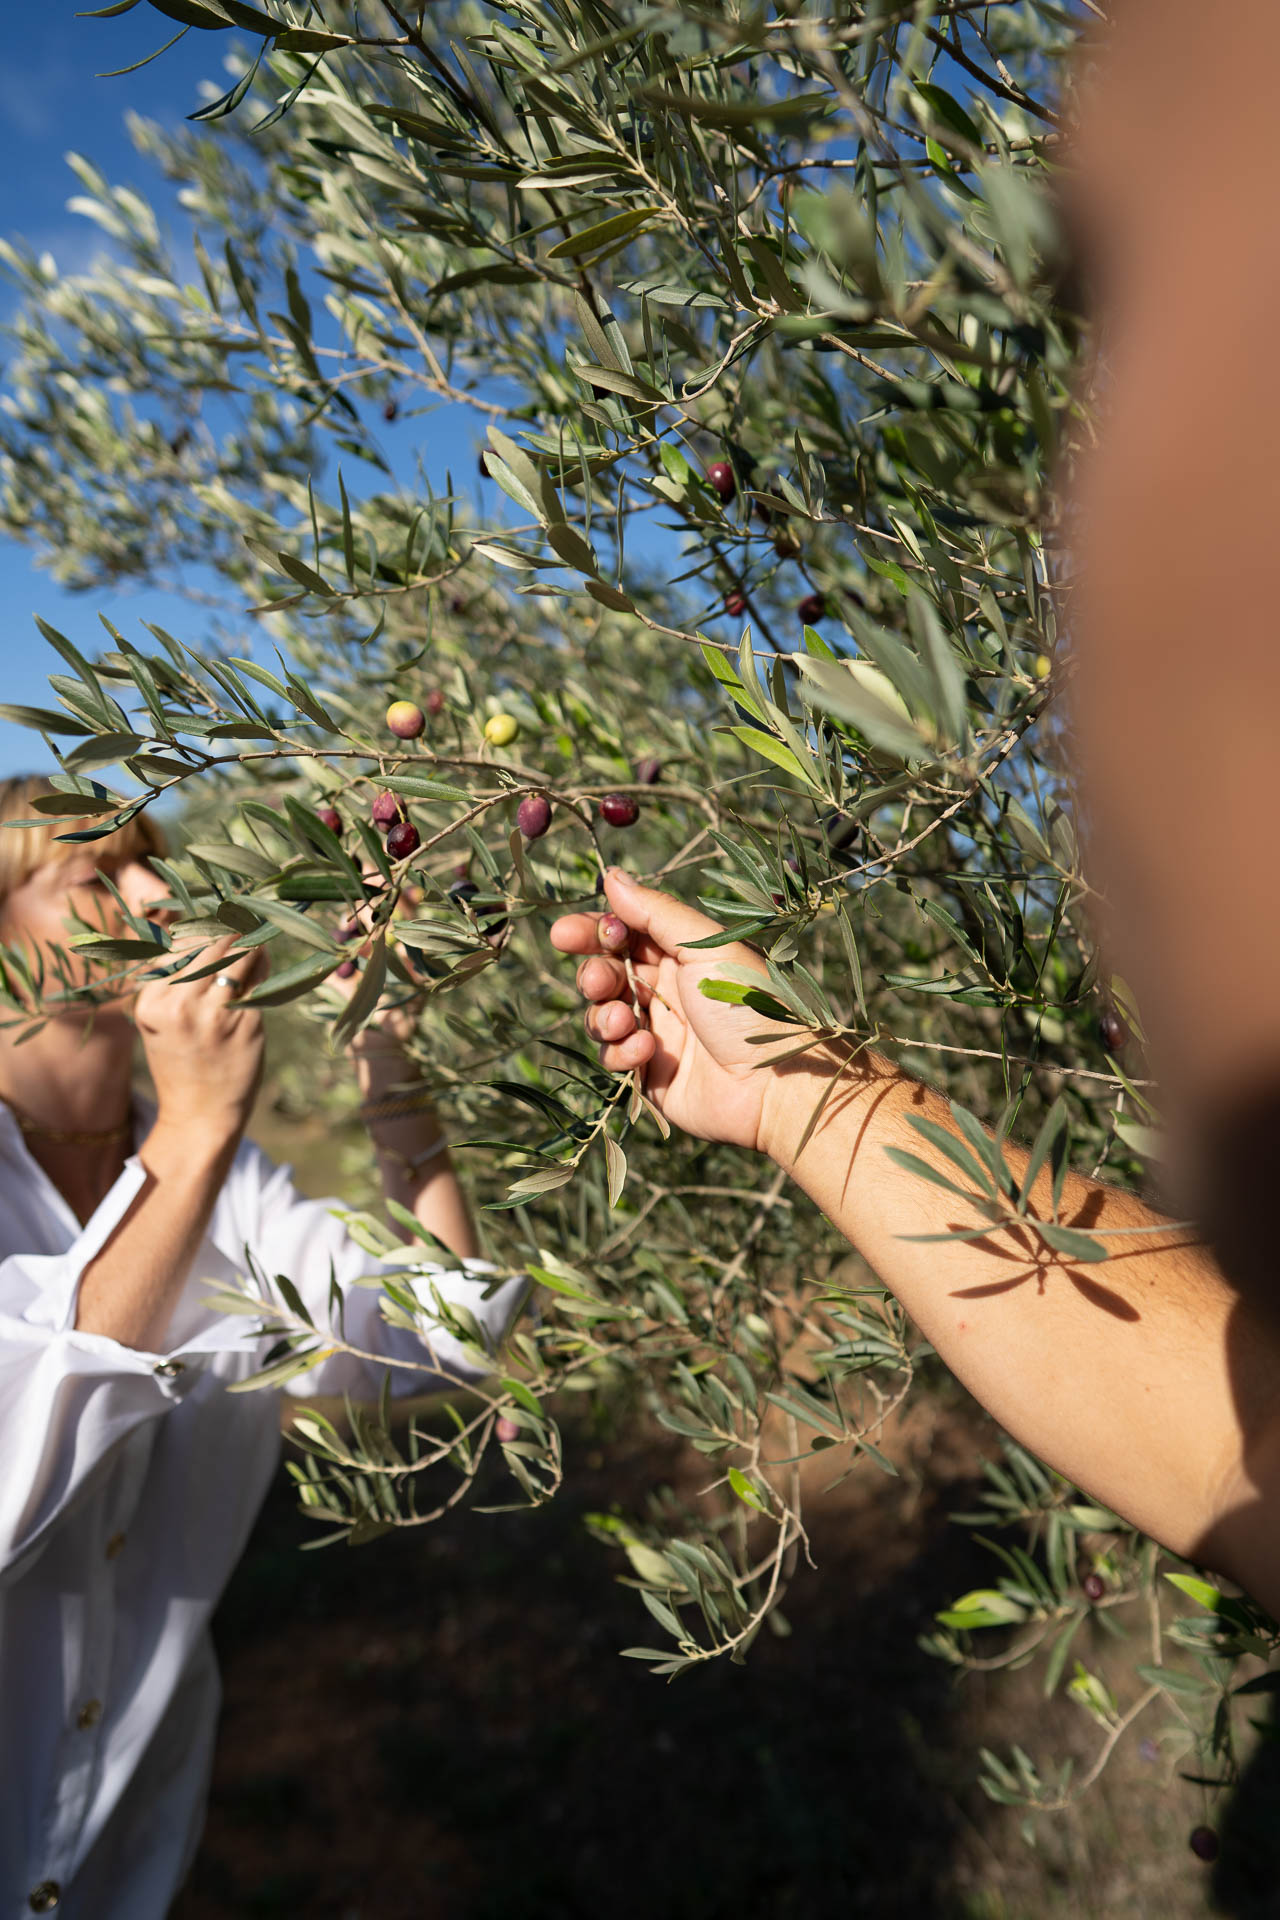 Frau und Herr Rubisch überprüfen die Reife der Oliven auf ihrer Olivenbaumplantage von ihrer Marke Oliveres1.de